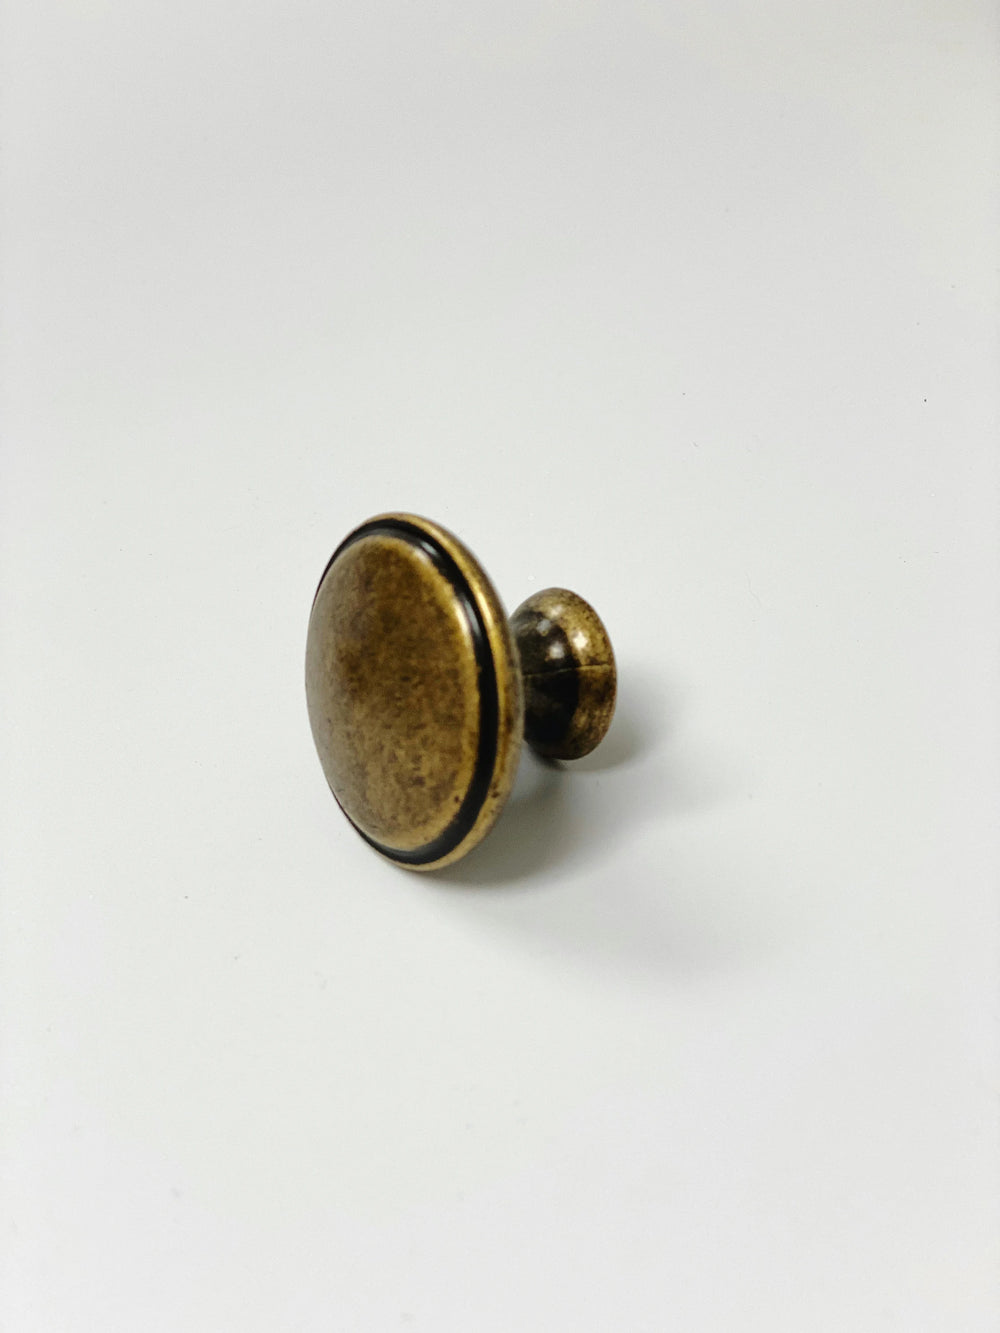 Antique Brass Round Cabinet Knob - Purdy Hardware - 